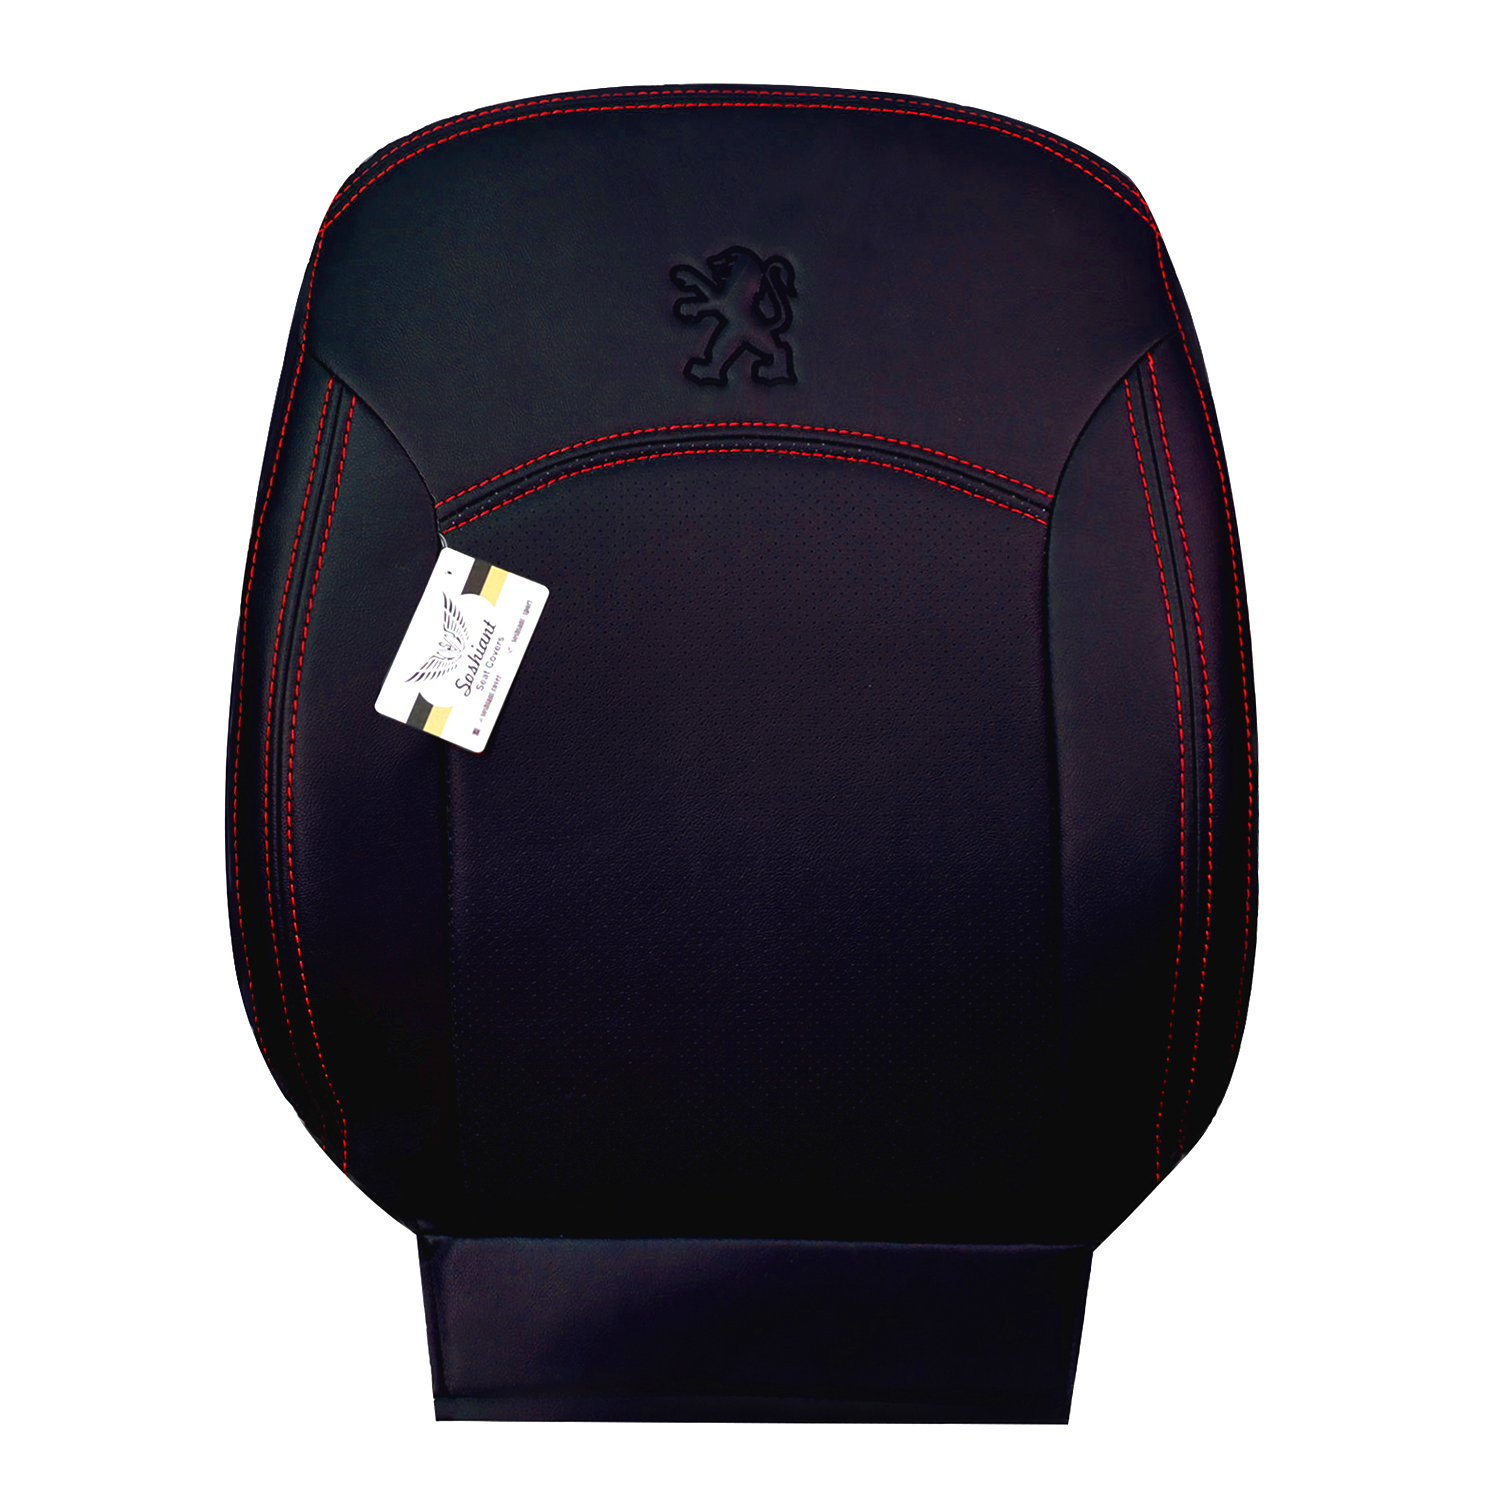 نکته خرید - قیمت روز روکش صندلی خودرو سوشیانت مدل دوماکو مناسب برای پژو 206 خرید